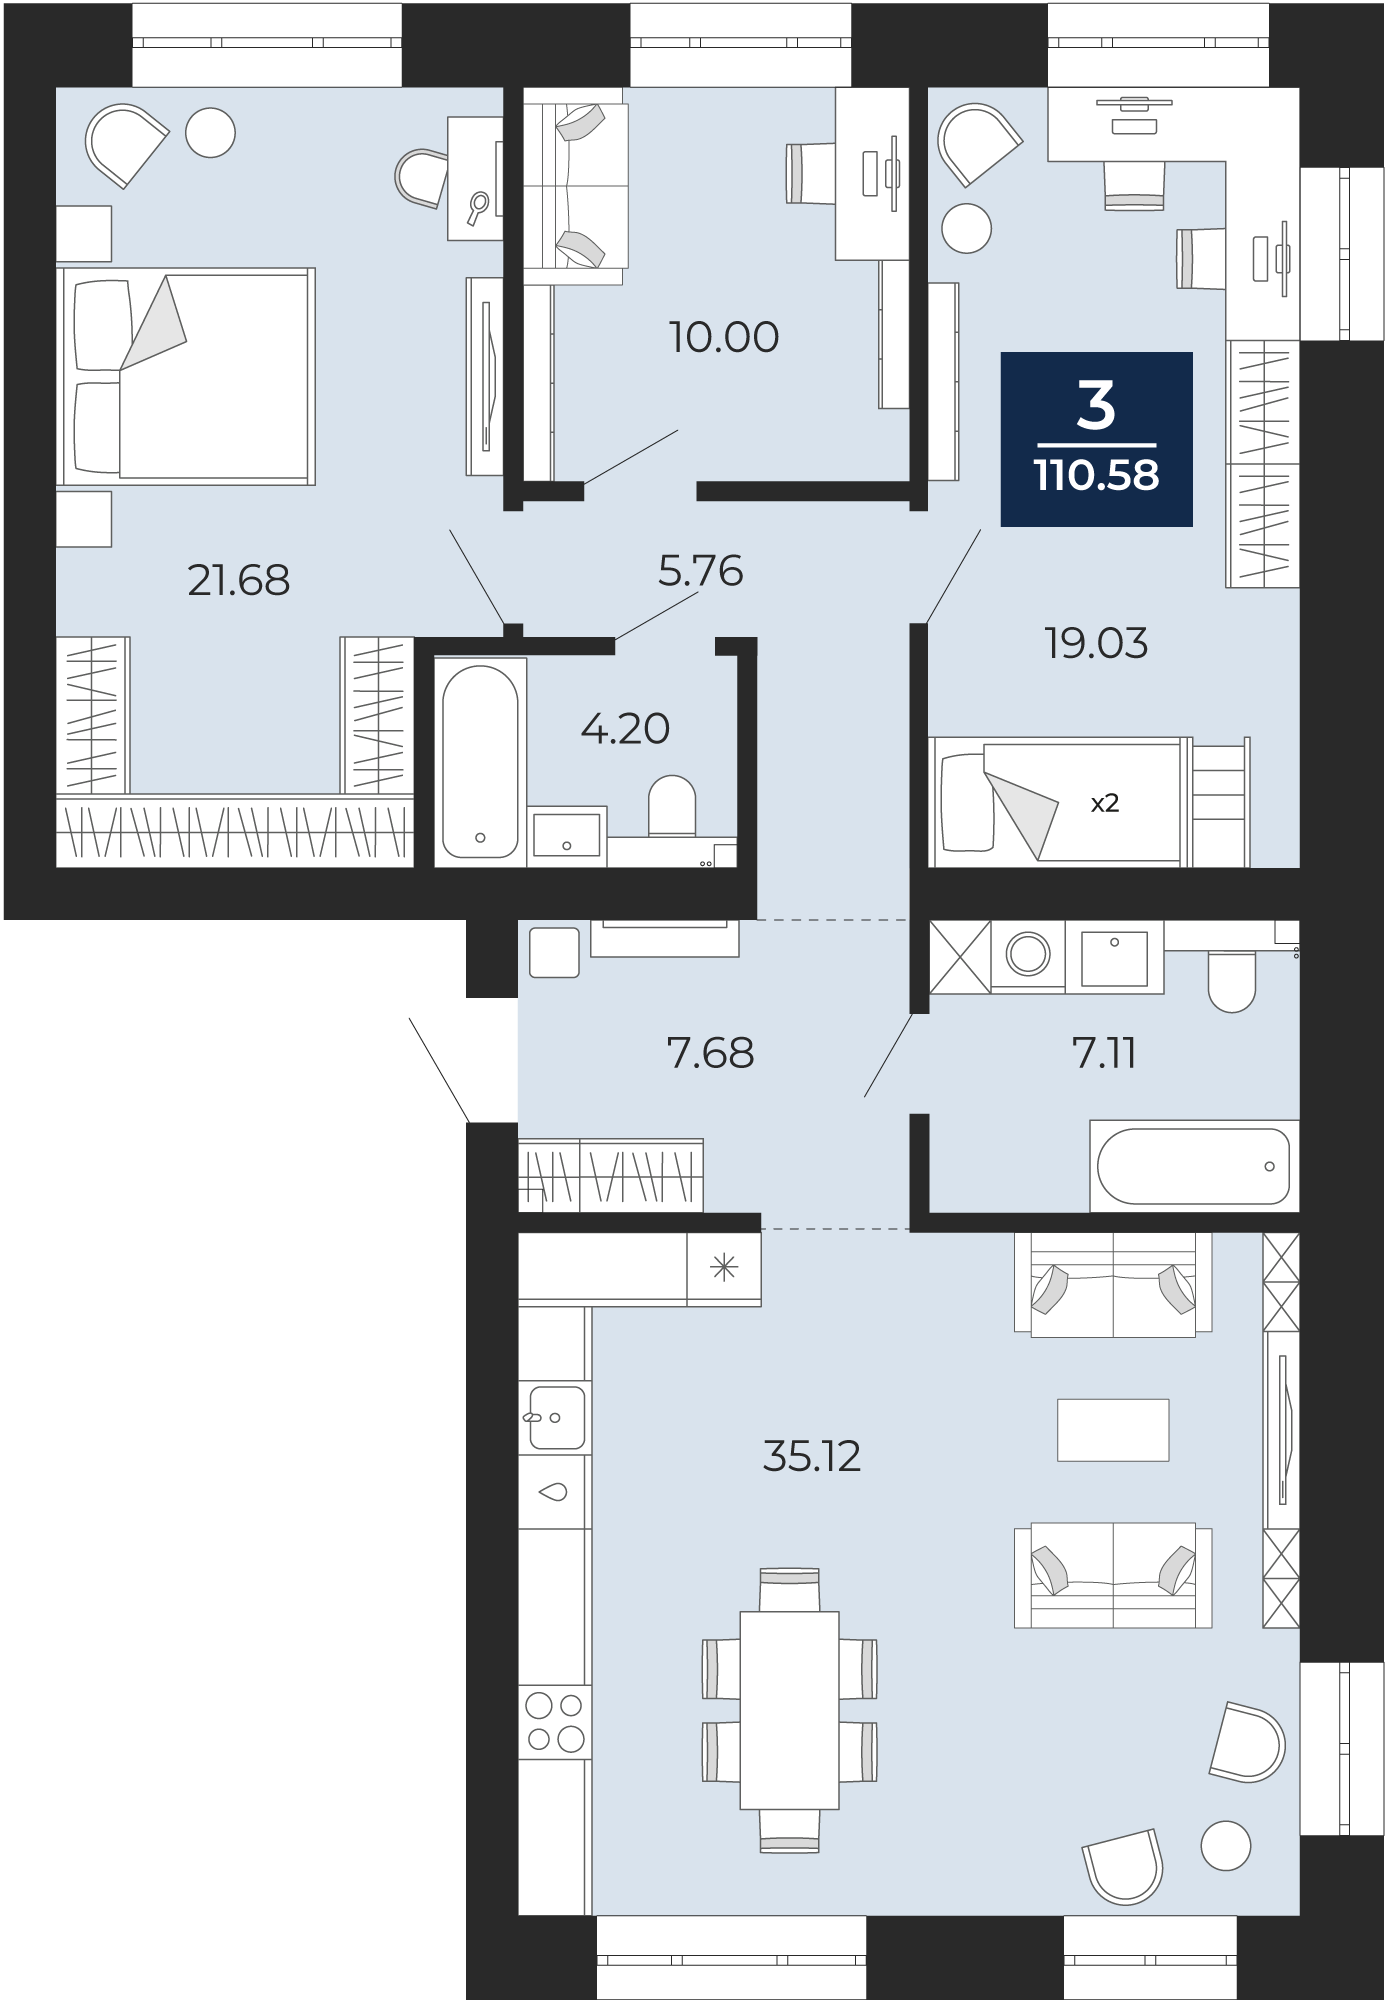 Квартира № 13, 3-комнатная, 110.58 кв. м, 3 этаж